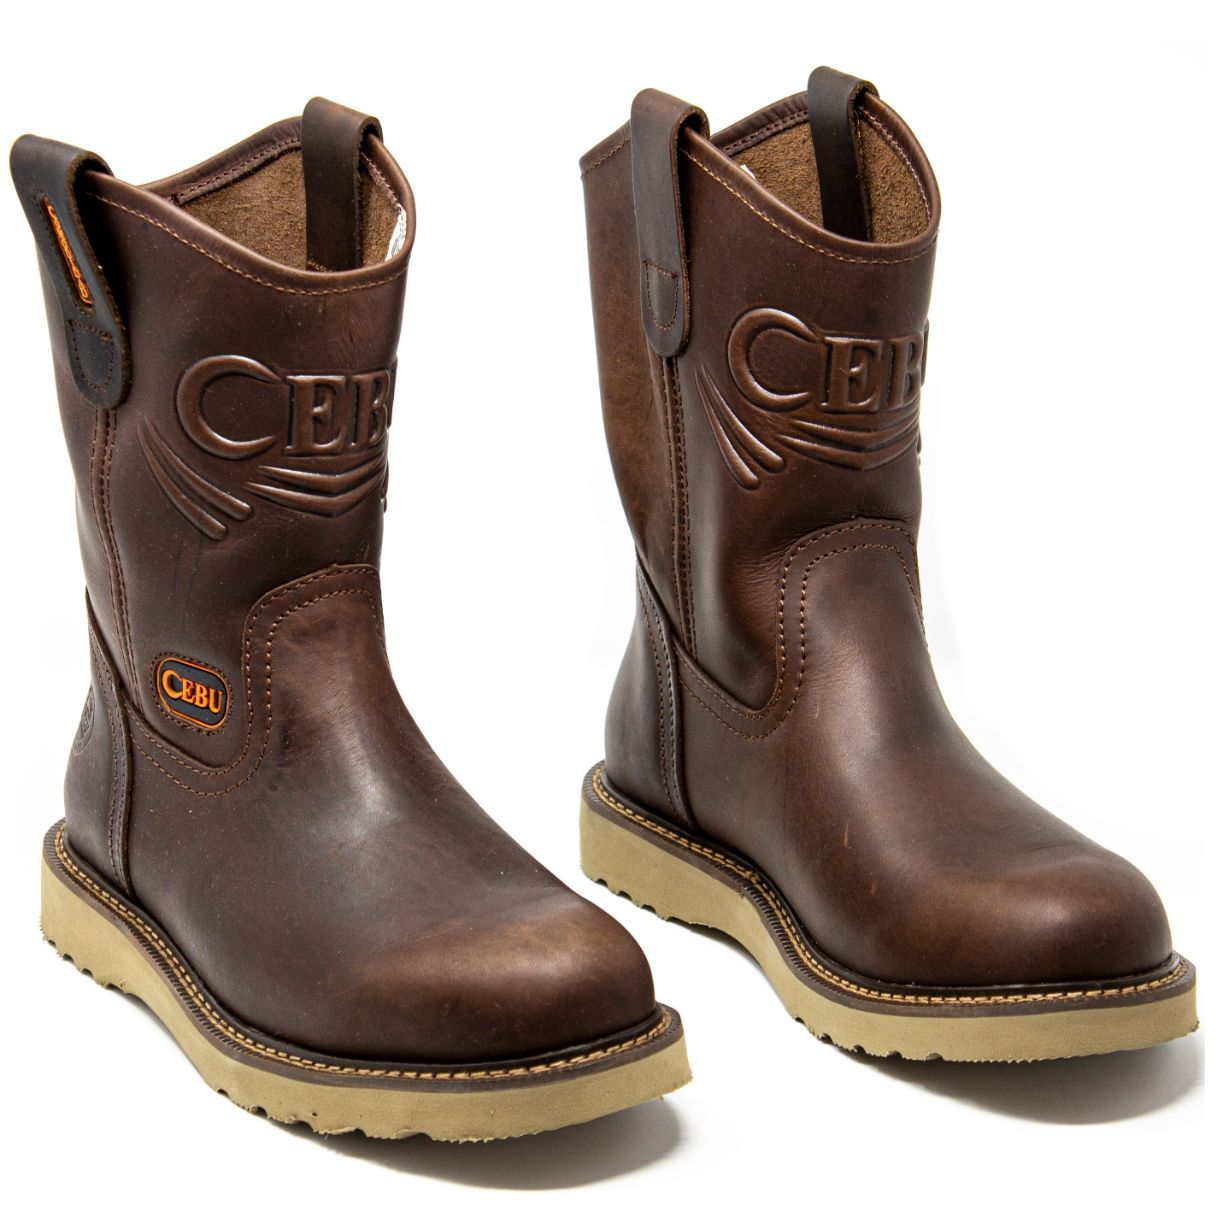 Men's Work Boots - Lightweight - Brown Work Boots - Cebu - Pull On Work Boots - Brown Wellington Work Boots